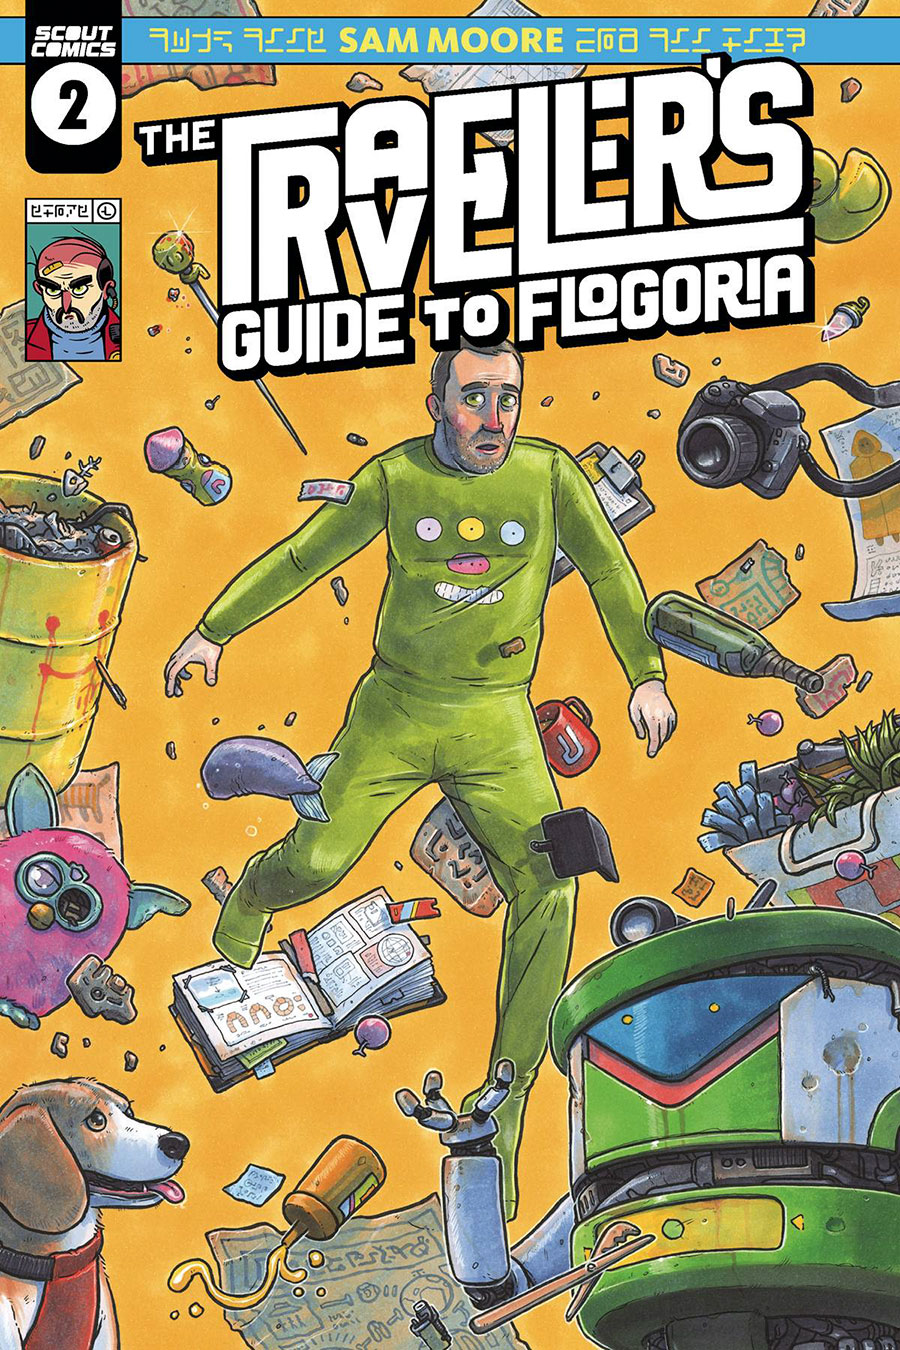 Travelers Guide To Flogoria #2 Cover A Regular Sam Moore Cover